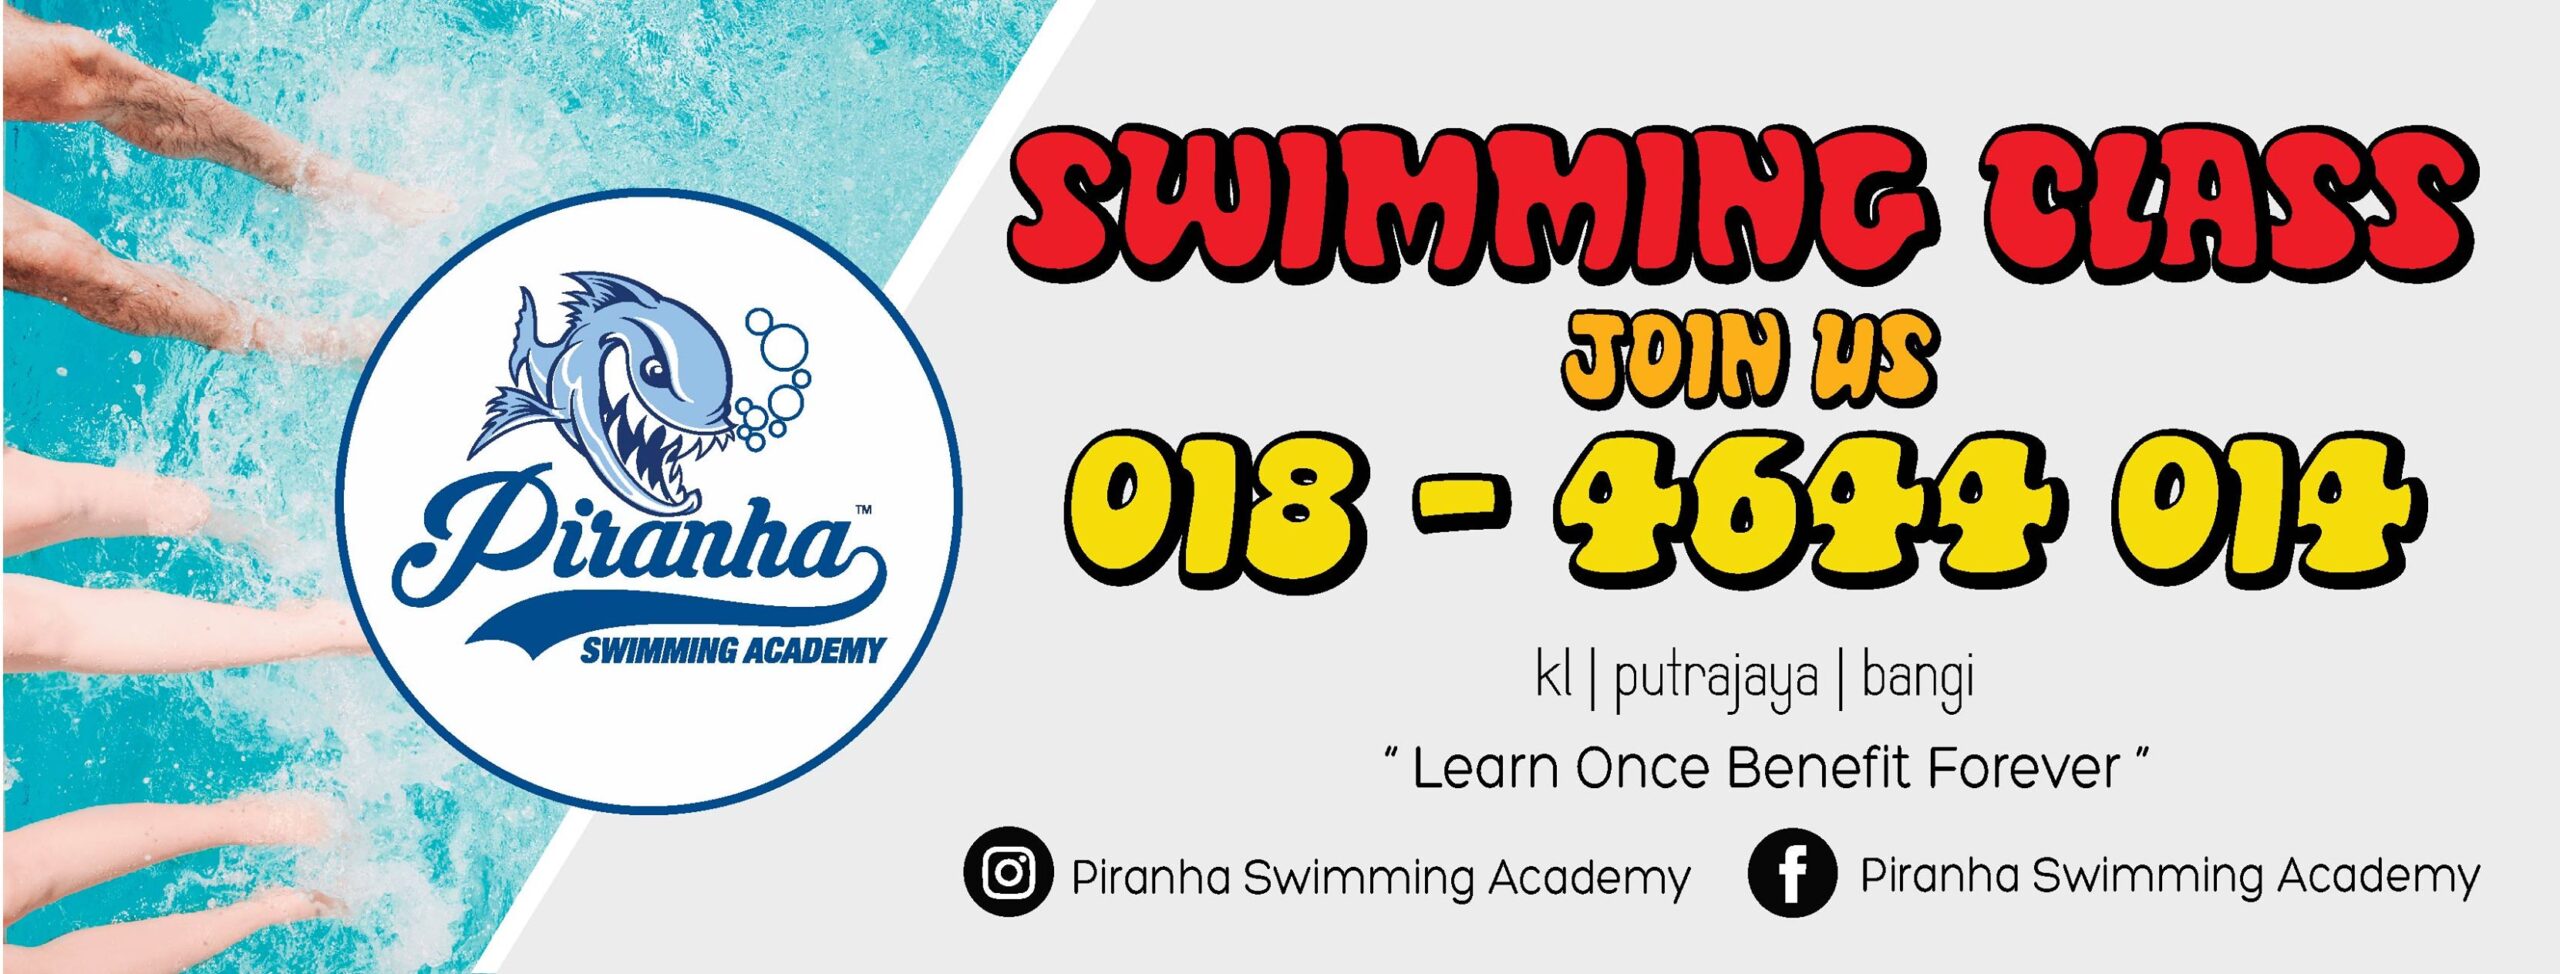 Piranha Swimming Academy